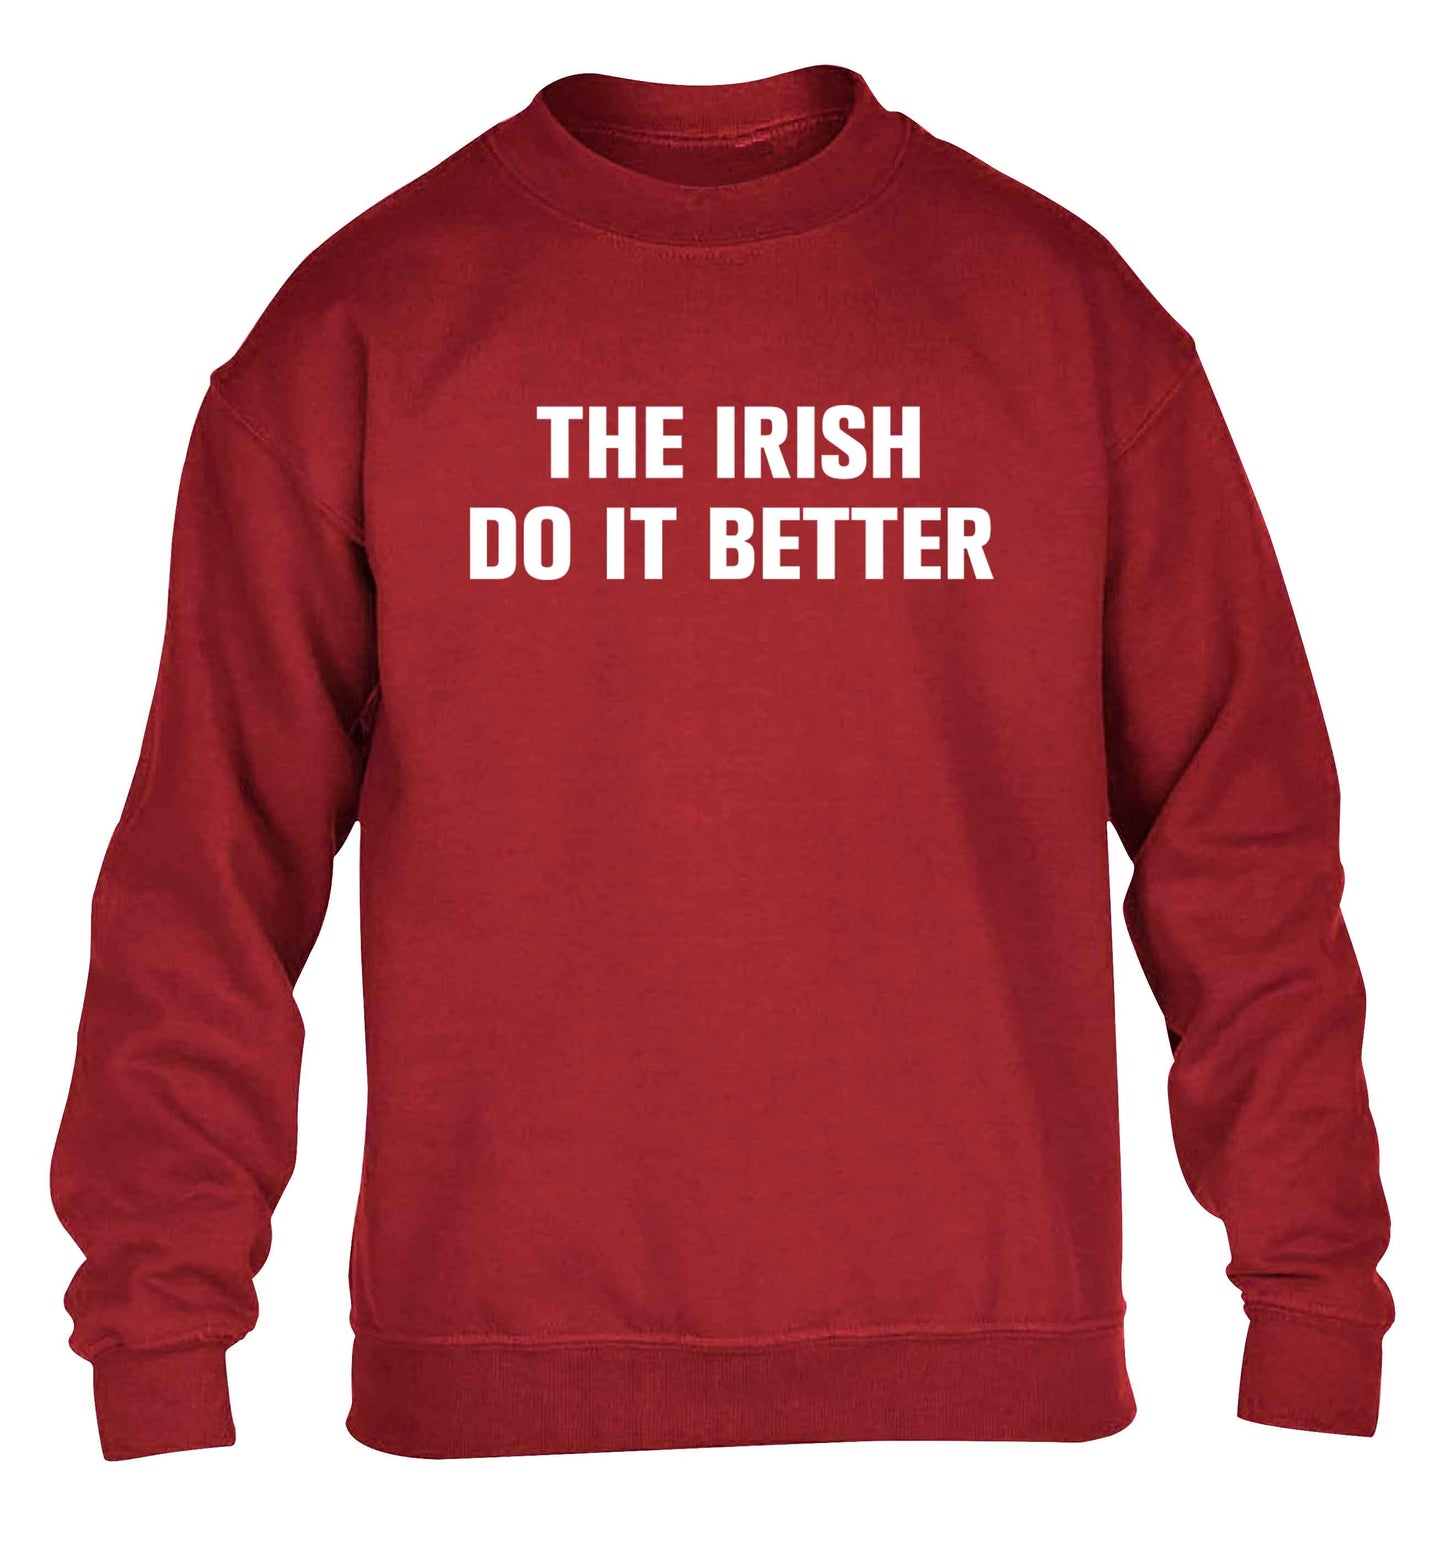 The Irish do it better children's grey sweater 12-13 Years